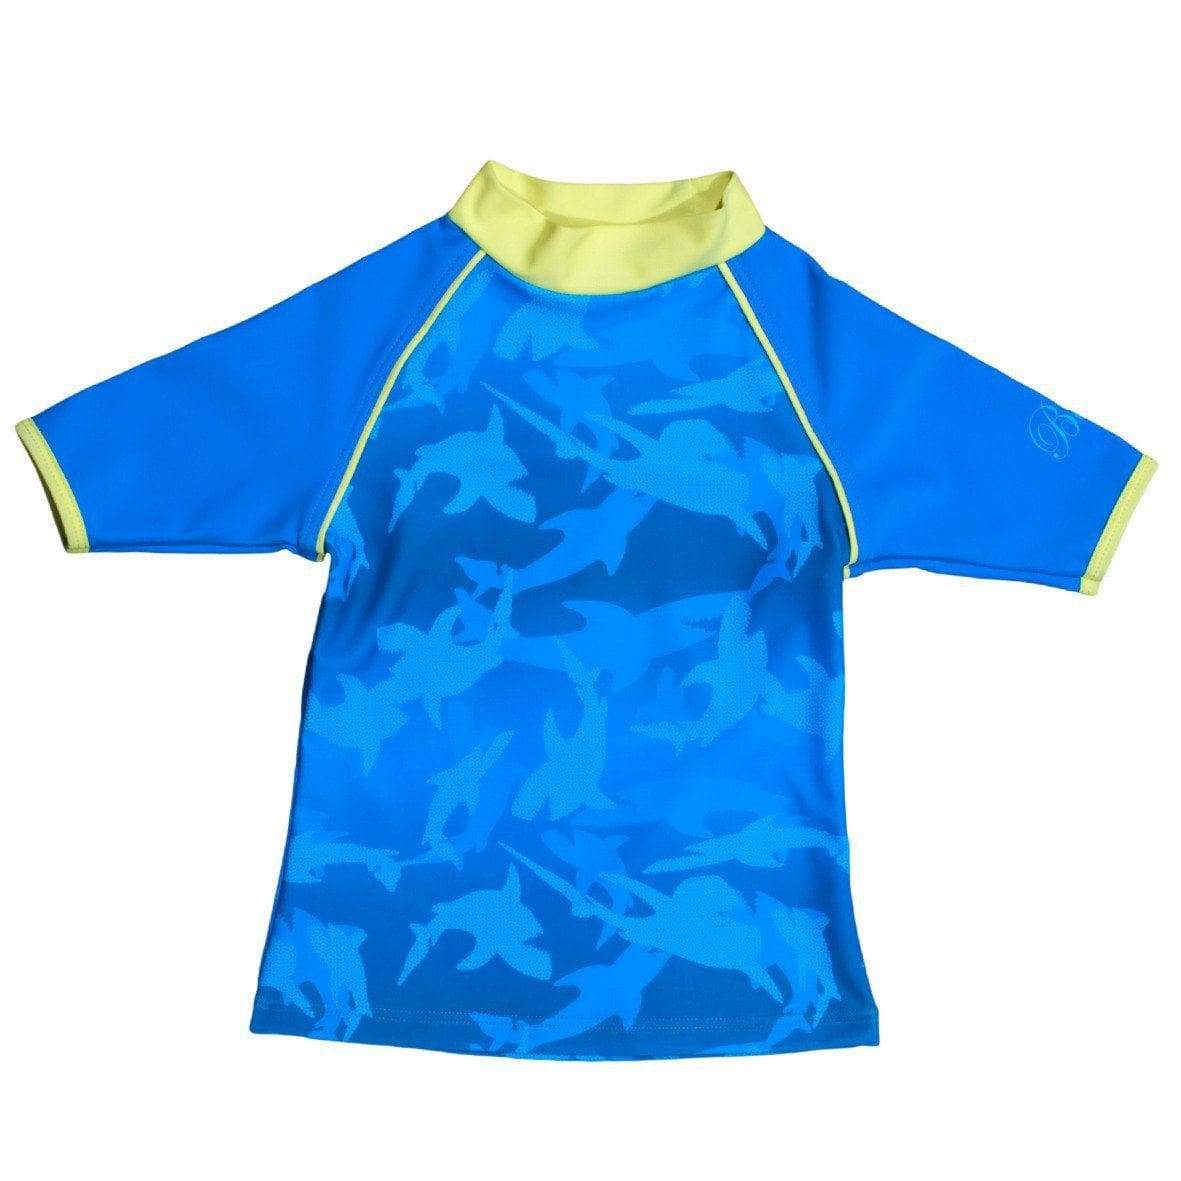 Kids Safety Yellow Swim Shirt  Shark Youth Long Sleeve Sun Shirt